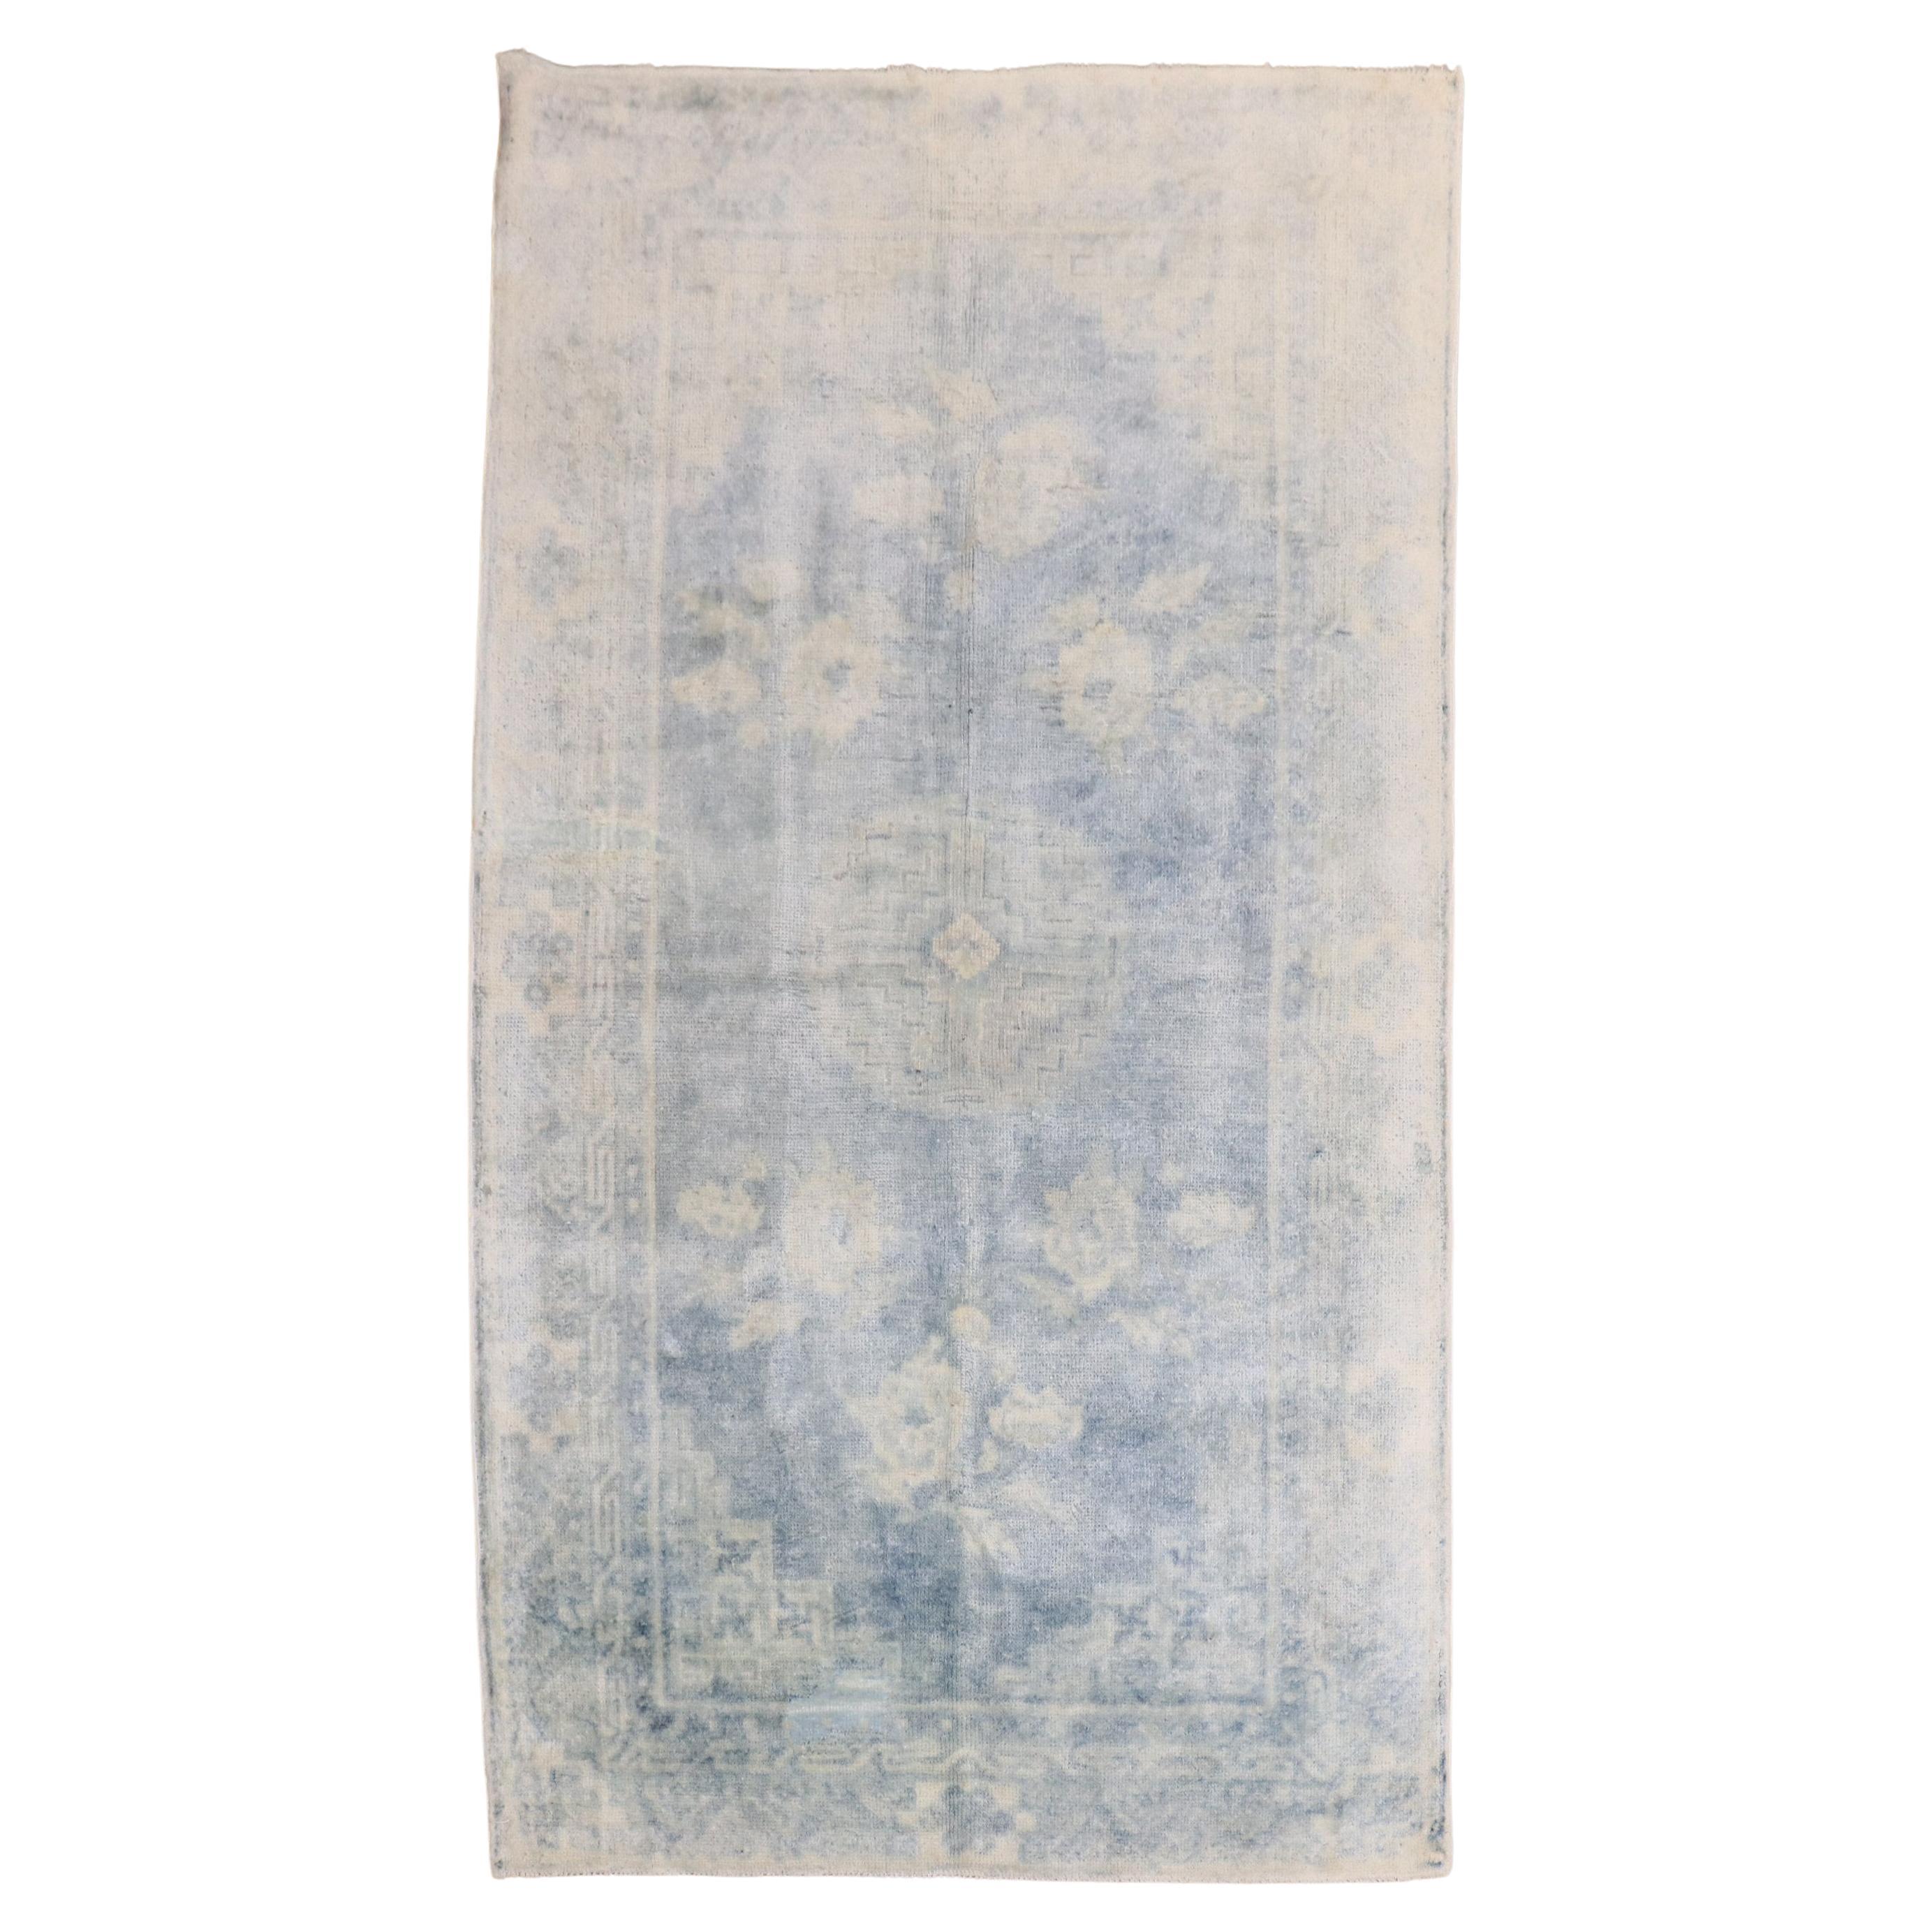 Tapis chinois du début du 20e siècle de la collection Zabihi bleu pâle